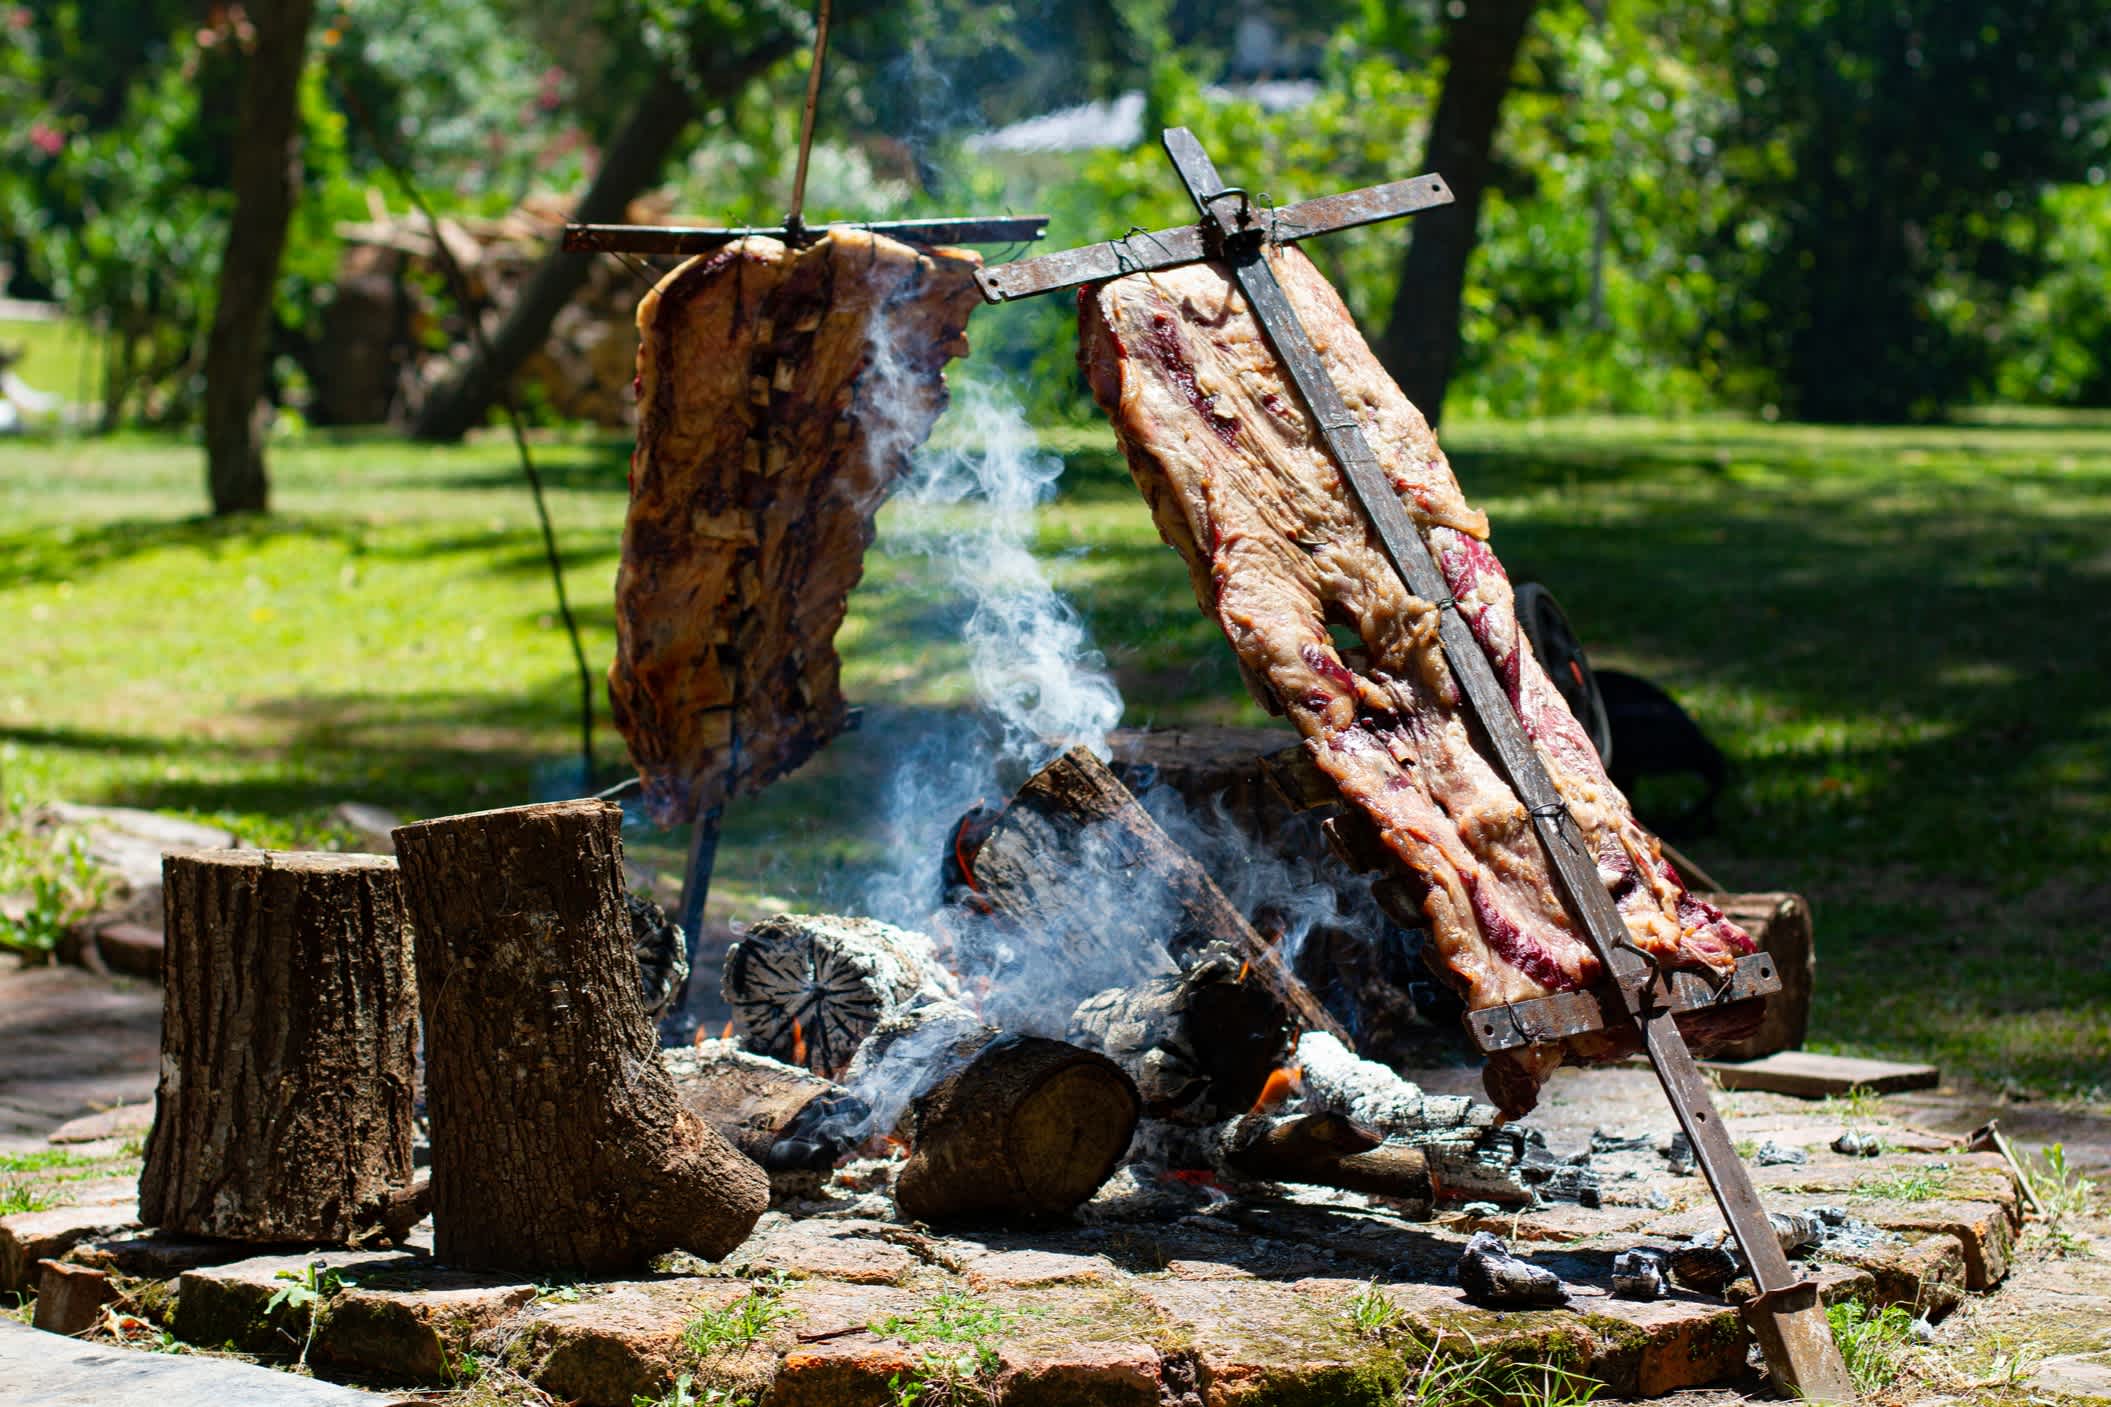 Asado, traditionelles Grillgericht in Argentinien, gebratenes Fleisch auf einem gekreuzten vertikalen Grill gekocht